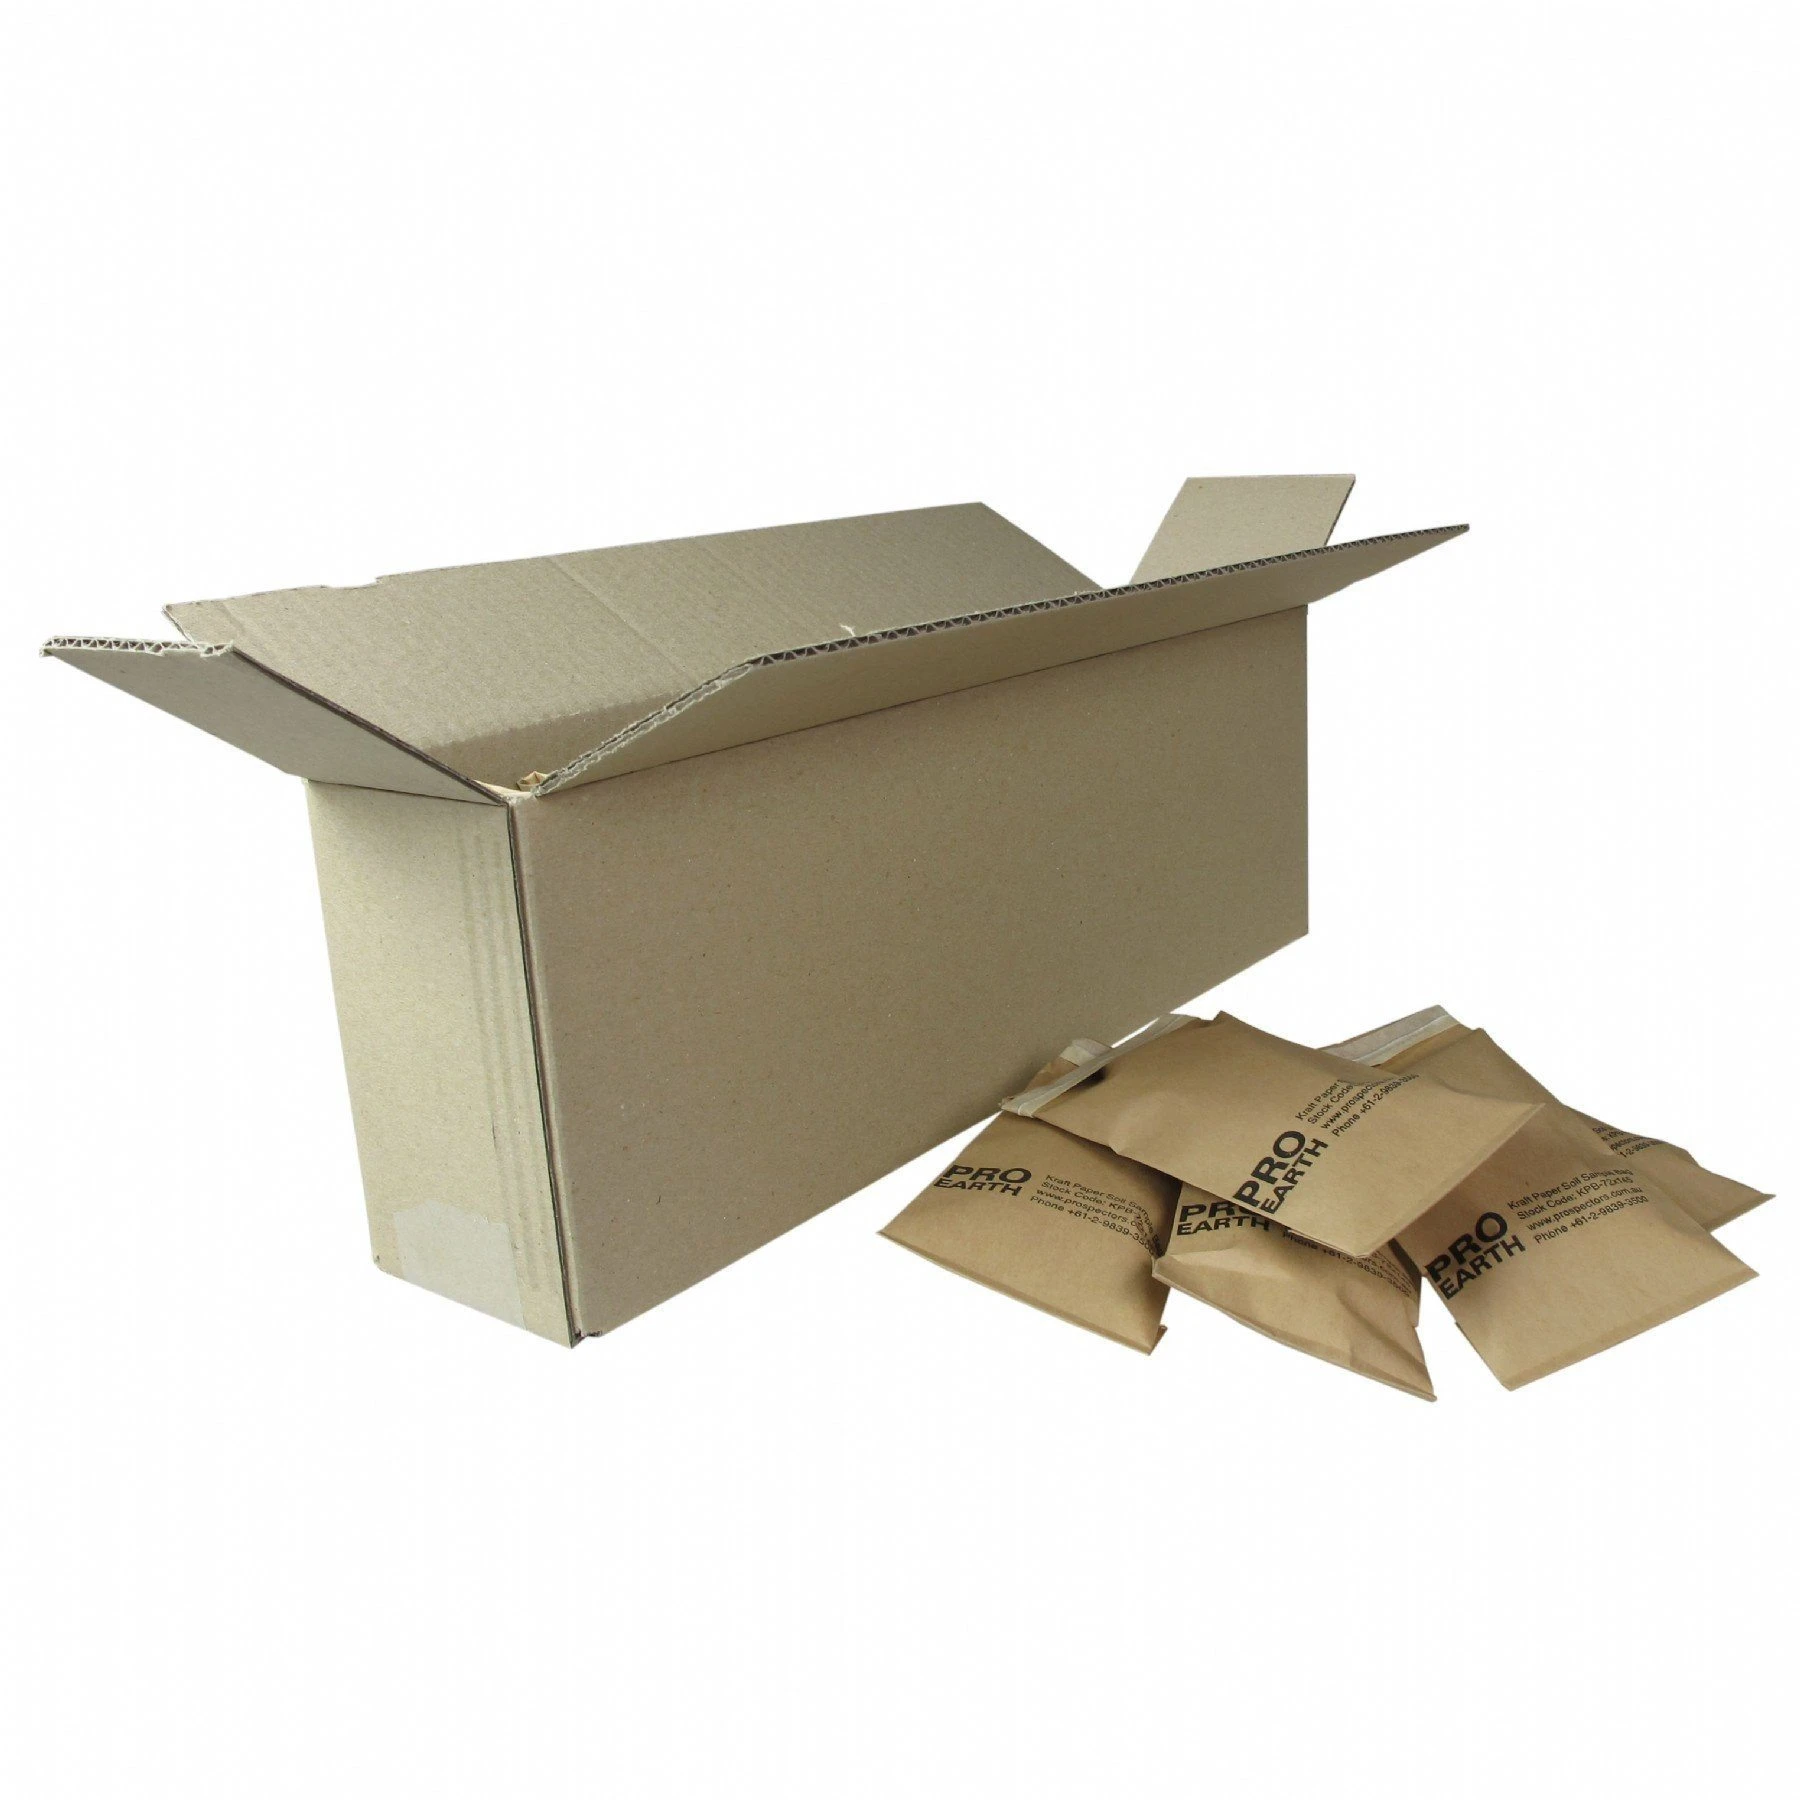 Kartonschachtel passend für 72 x 145 mm Bodenprobenbeutel aus Kraftpapier, z. B. Geochem-Beutel